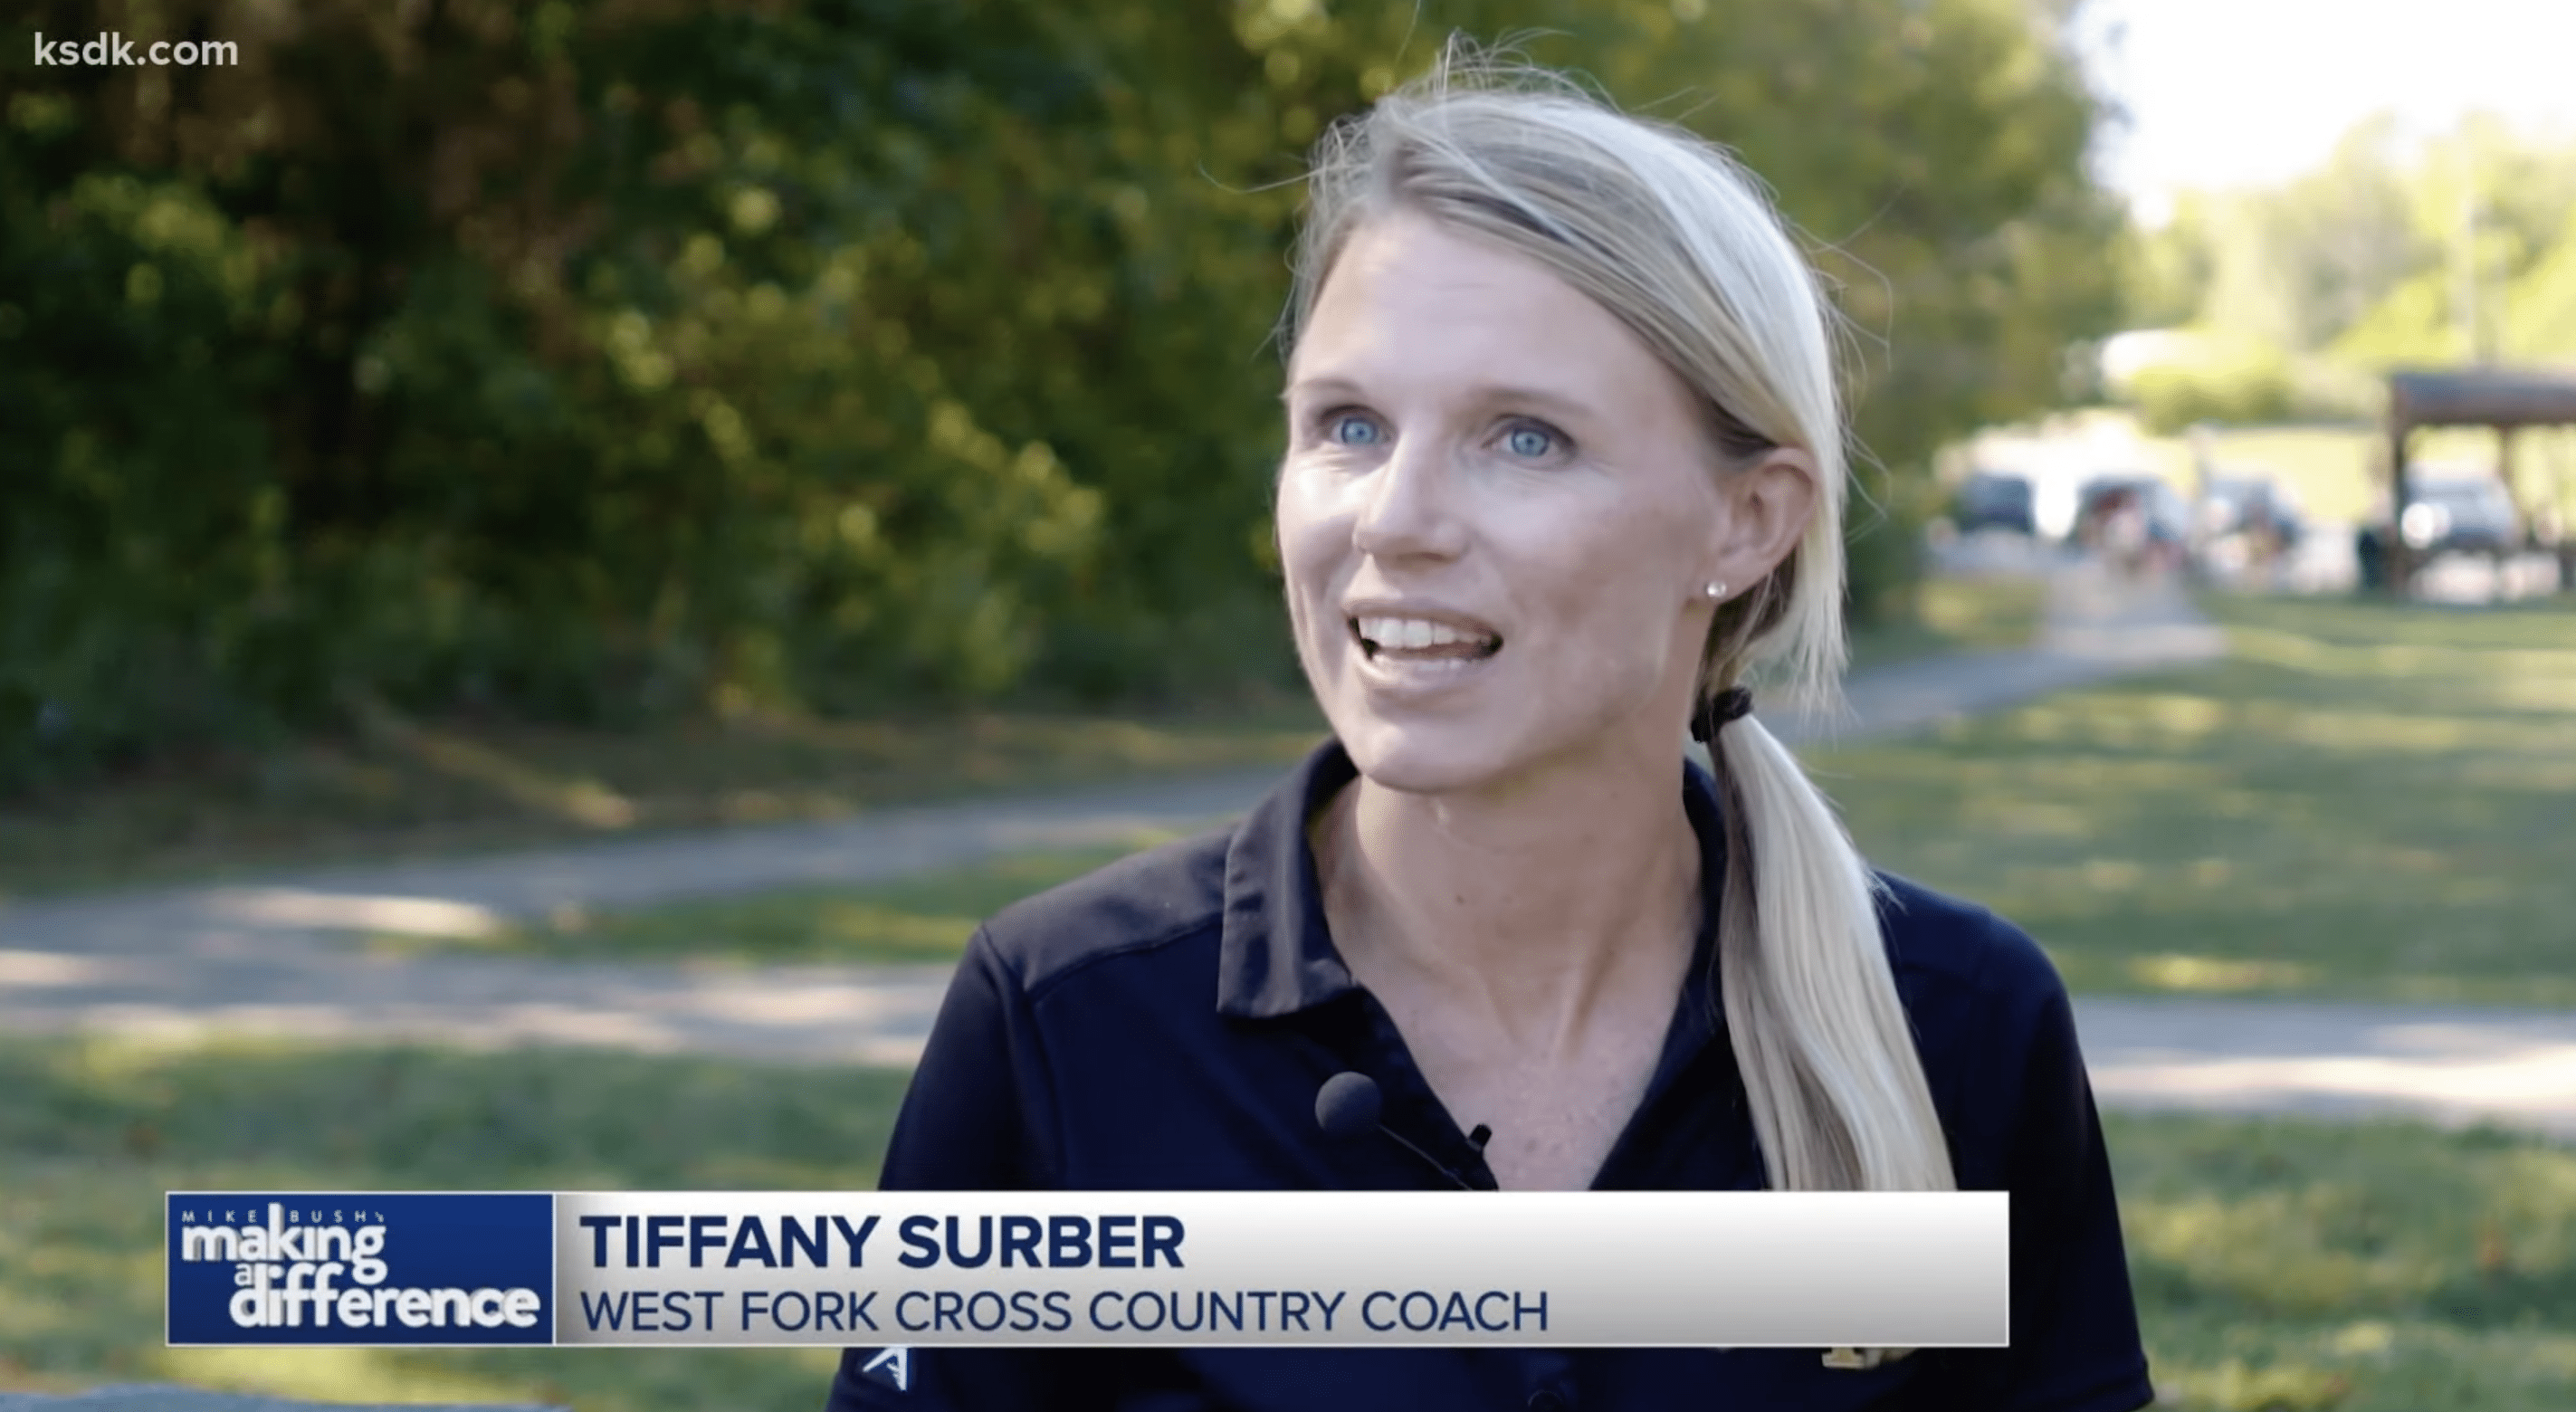 La entrenadora Tiffany Surber, compartió sus pensamientos sobre la valoración de la inclusión en el equipo. | Foto: YouTube/KSDK News